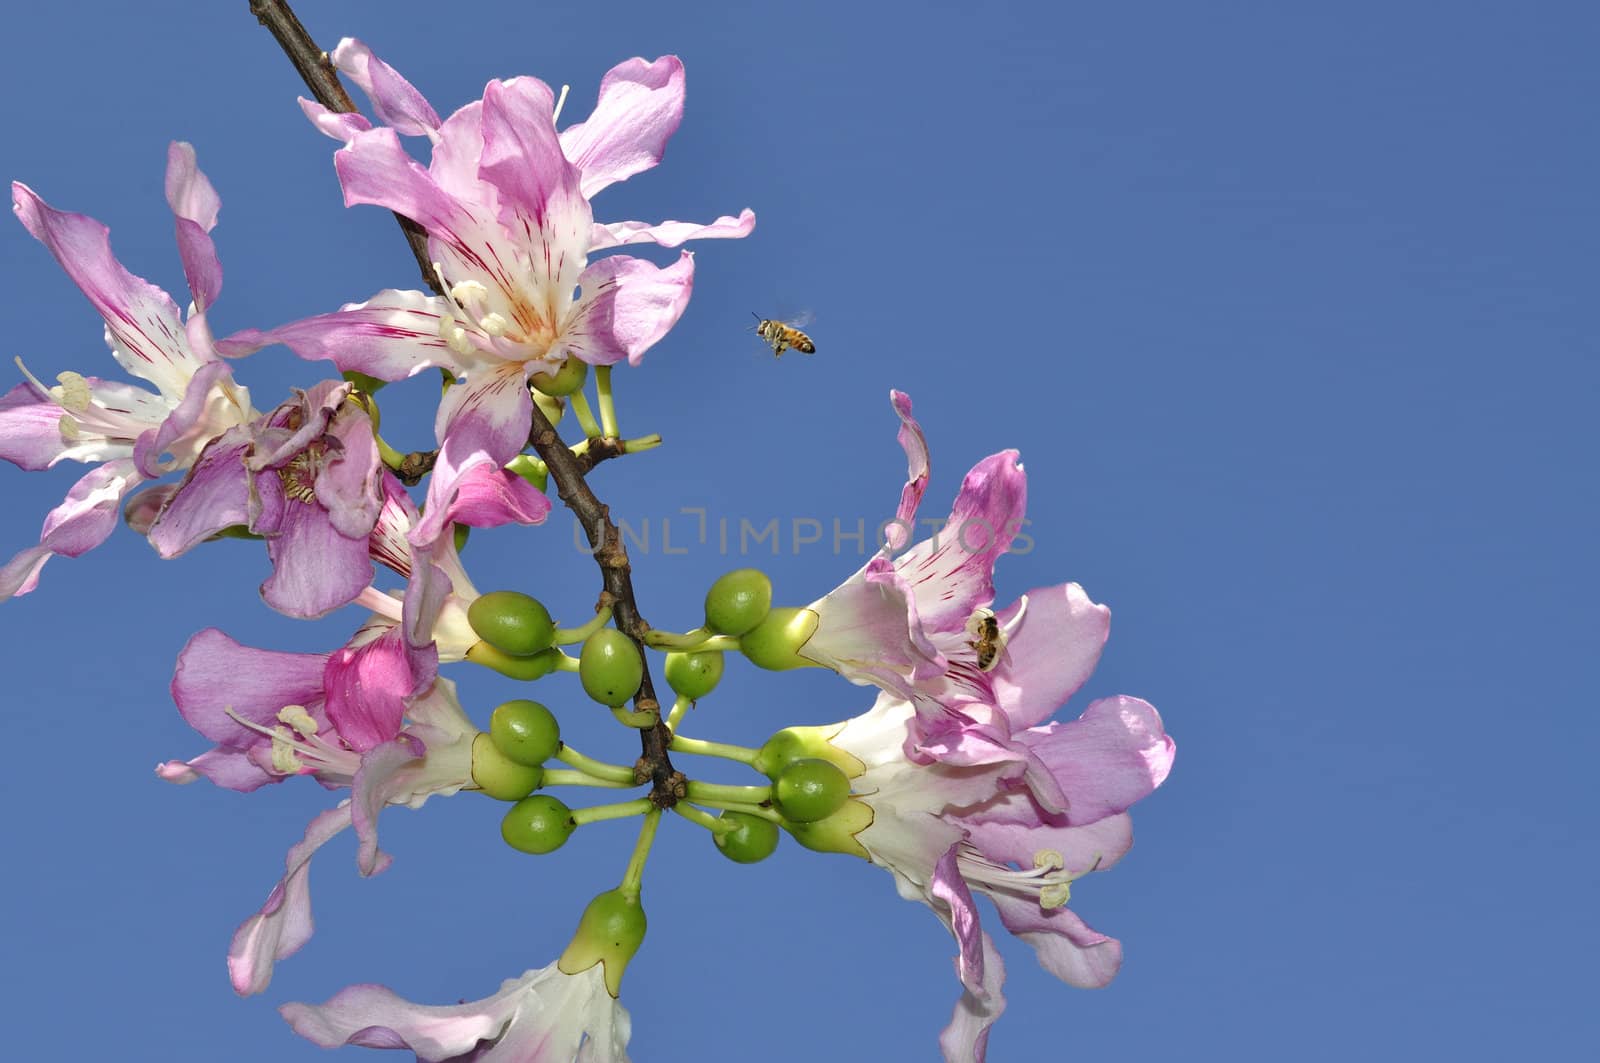 Bee Approaching a Flower by fernando2148